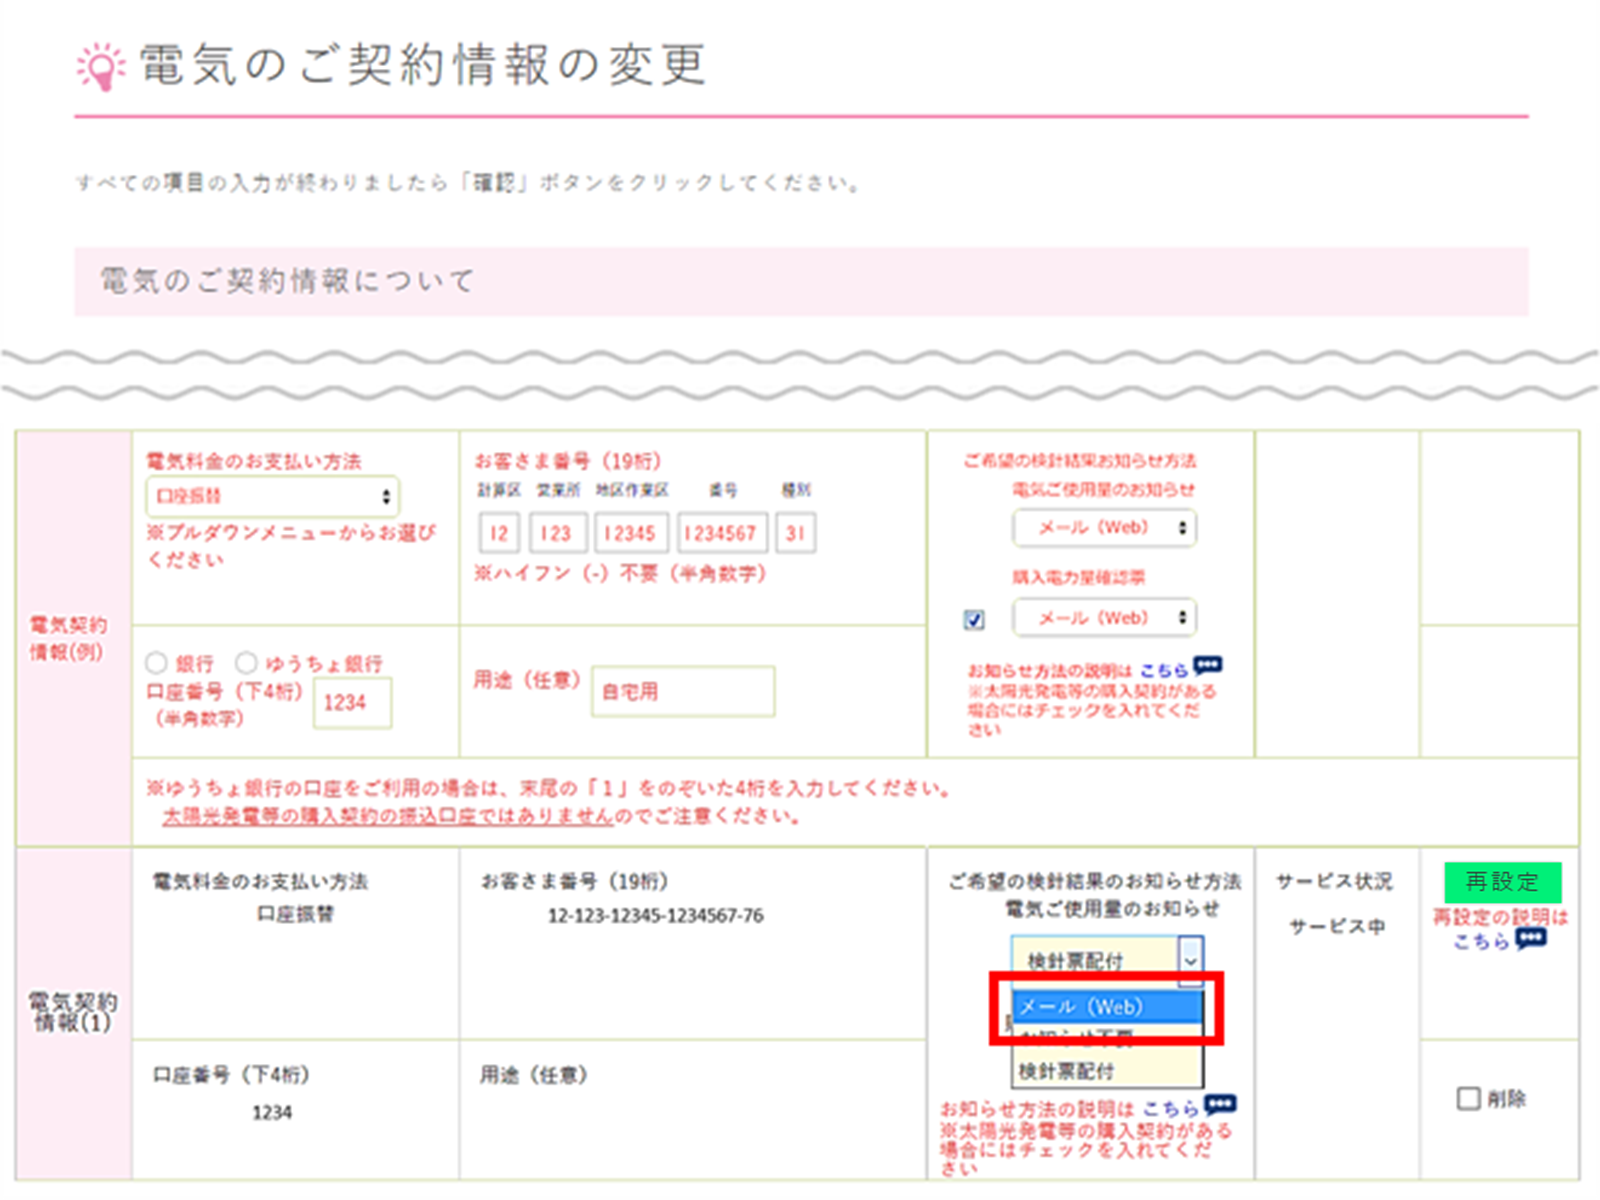 票 Web 検針 東京電力が勝手に口座振替領収証を廃止→WEB明細をほぼ強要 おかしくな